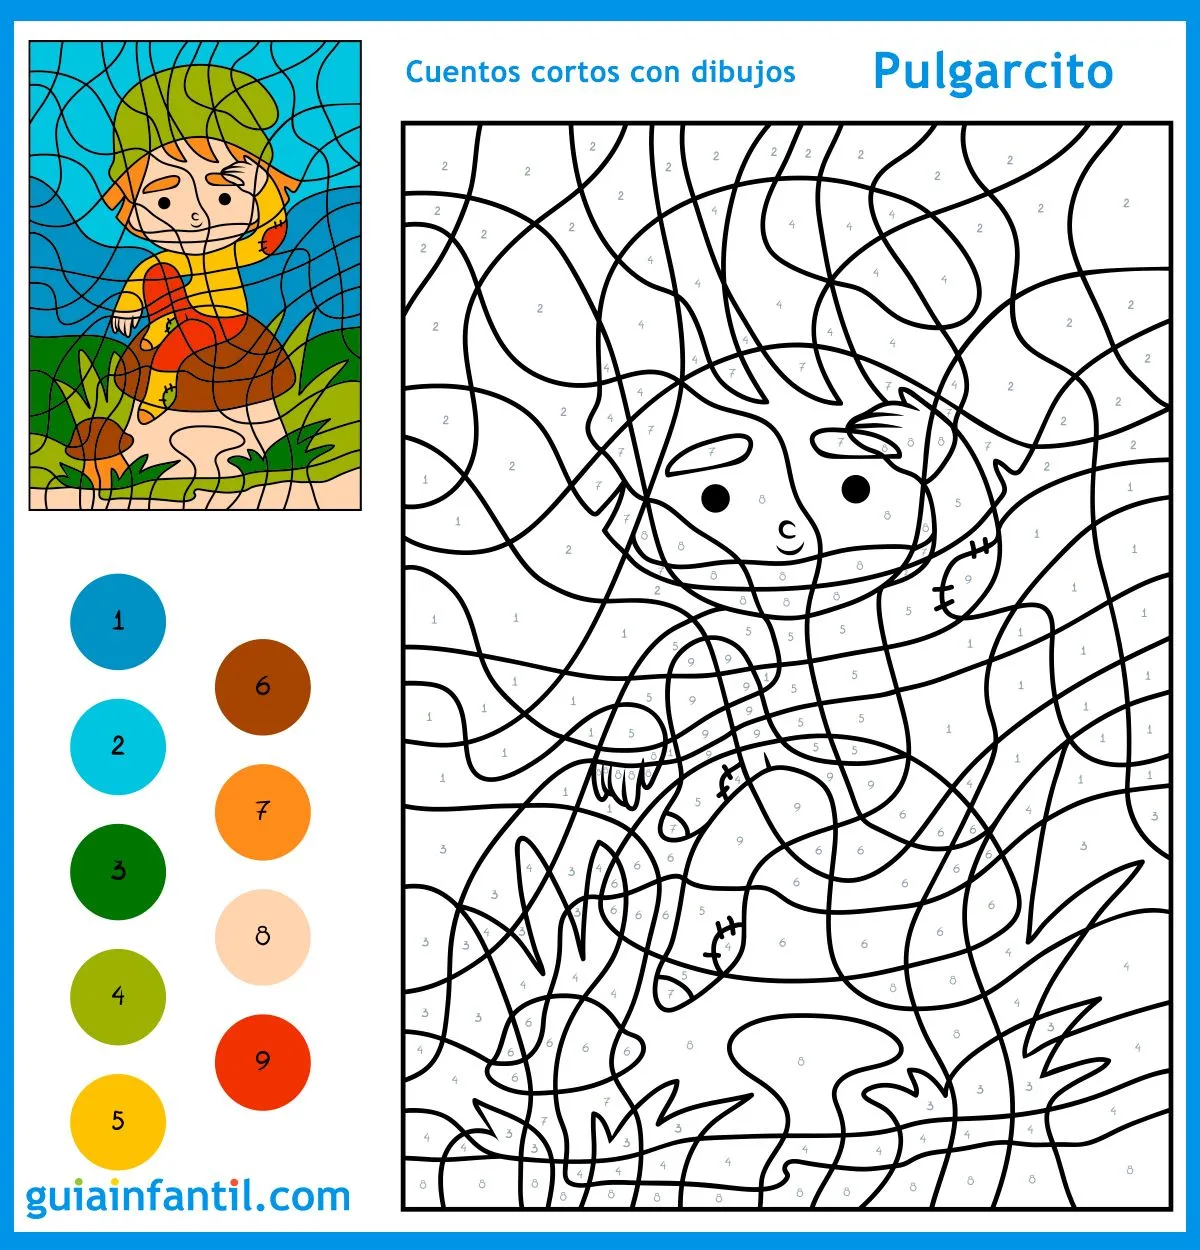 9 cuentos cortos con dibujos e ilustraciones para colorear con niños